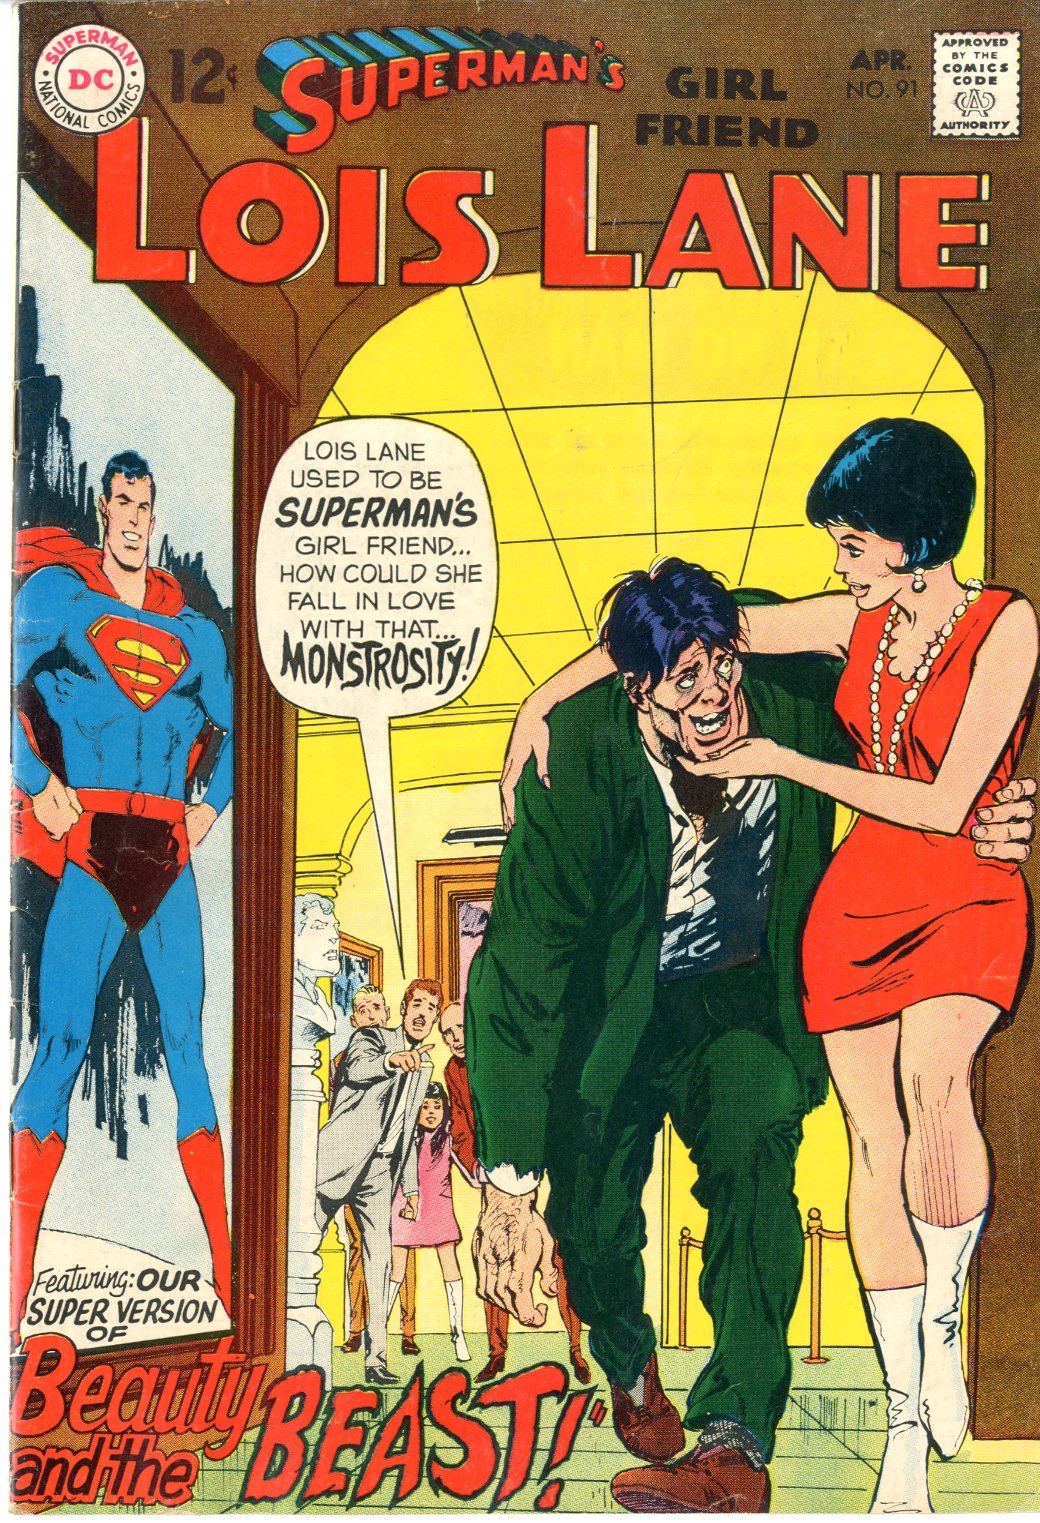 Lois Lane Issue 91 Comics Details Four Color Comics 9434